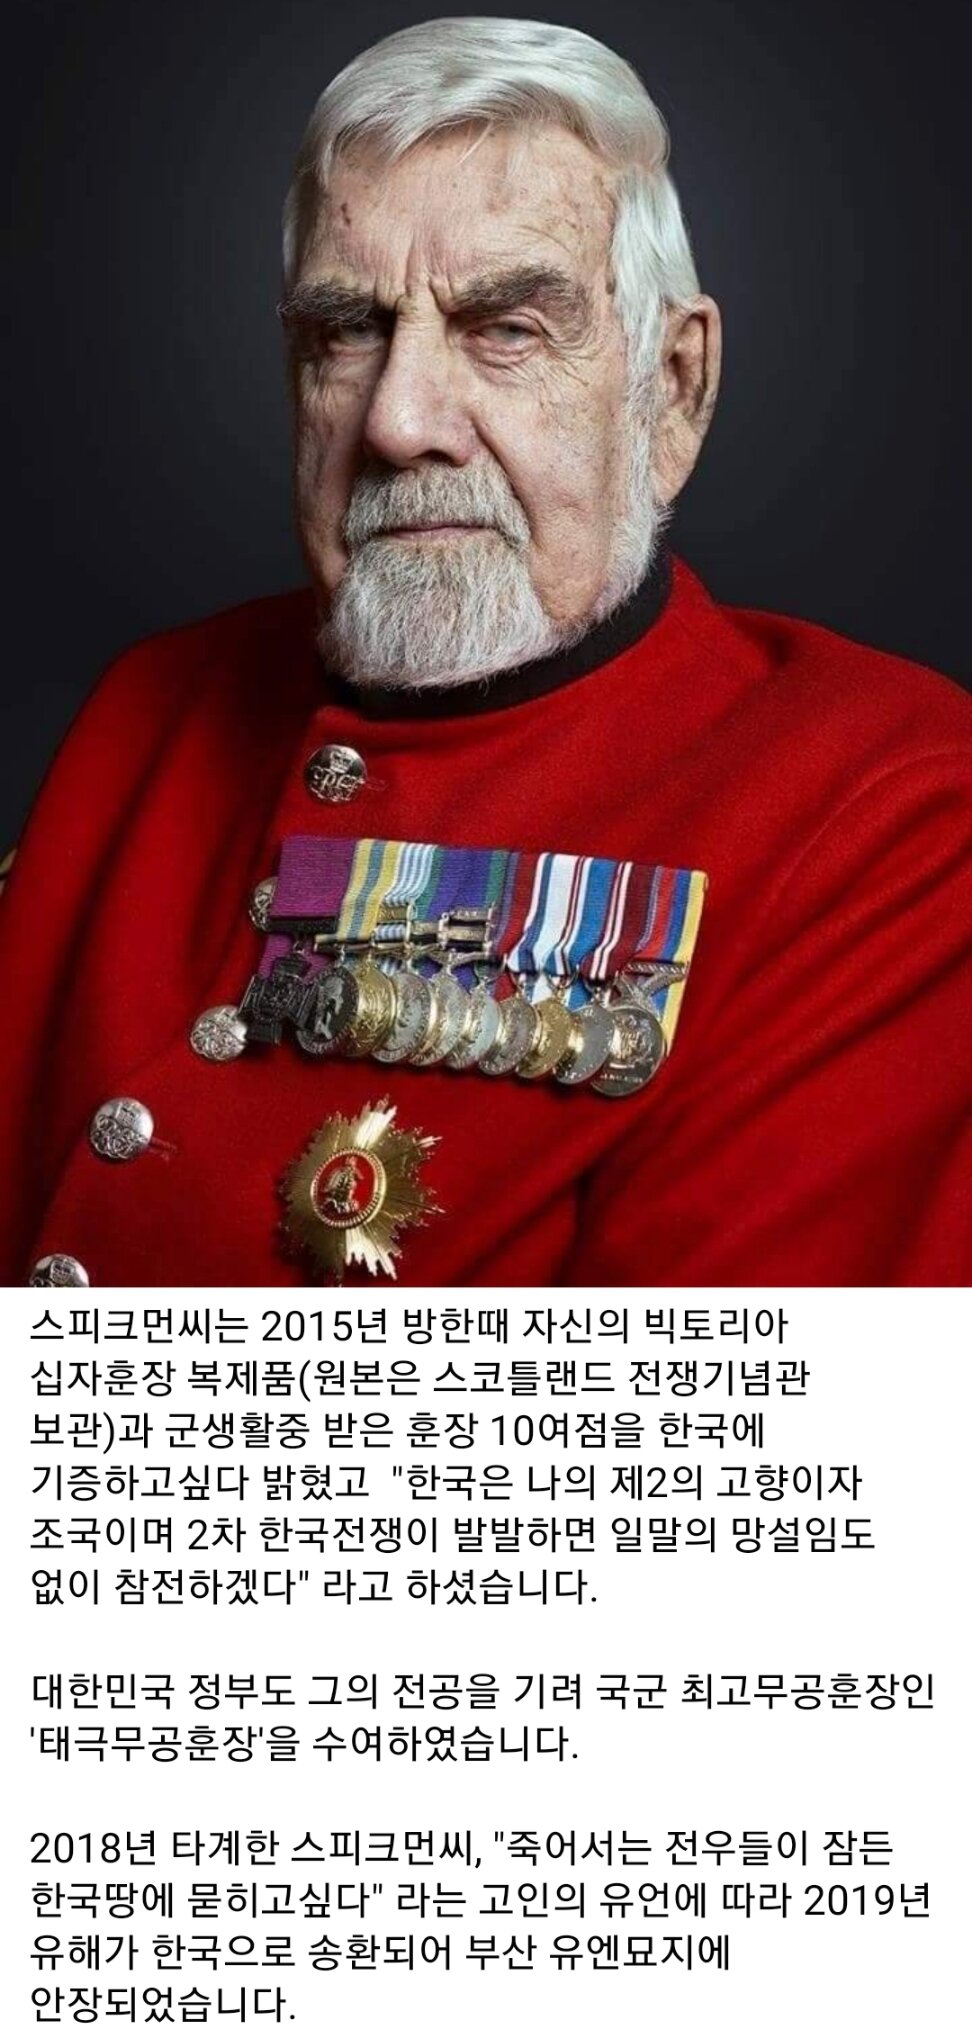 영국과 한국 양국에서 최고무공훈장을 수여받은 참전용사